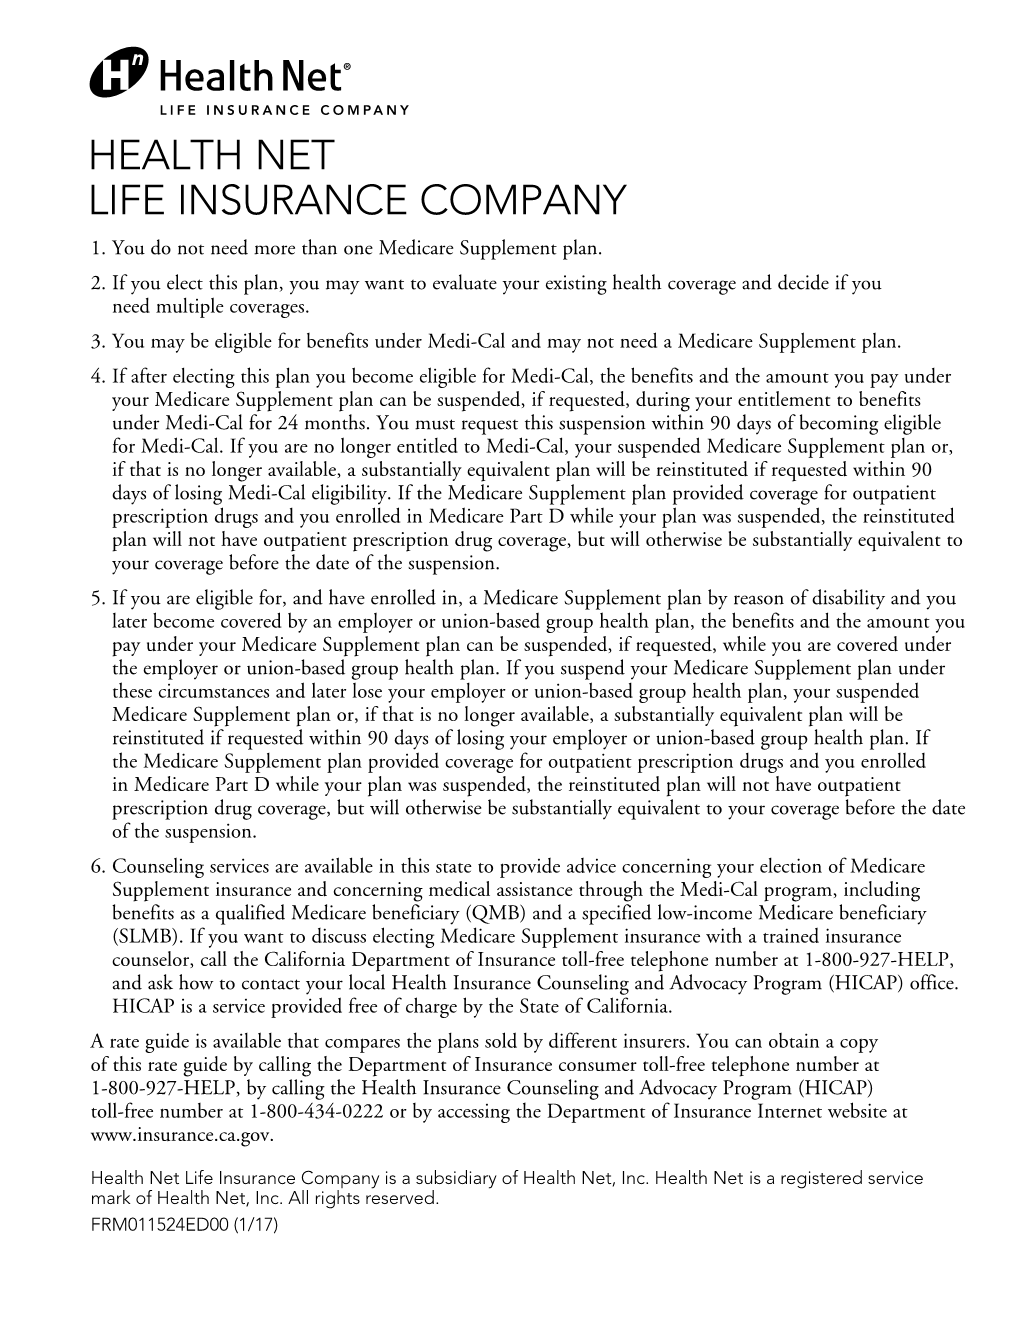 Health Net Life Insurance Company 1